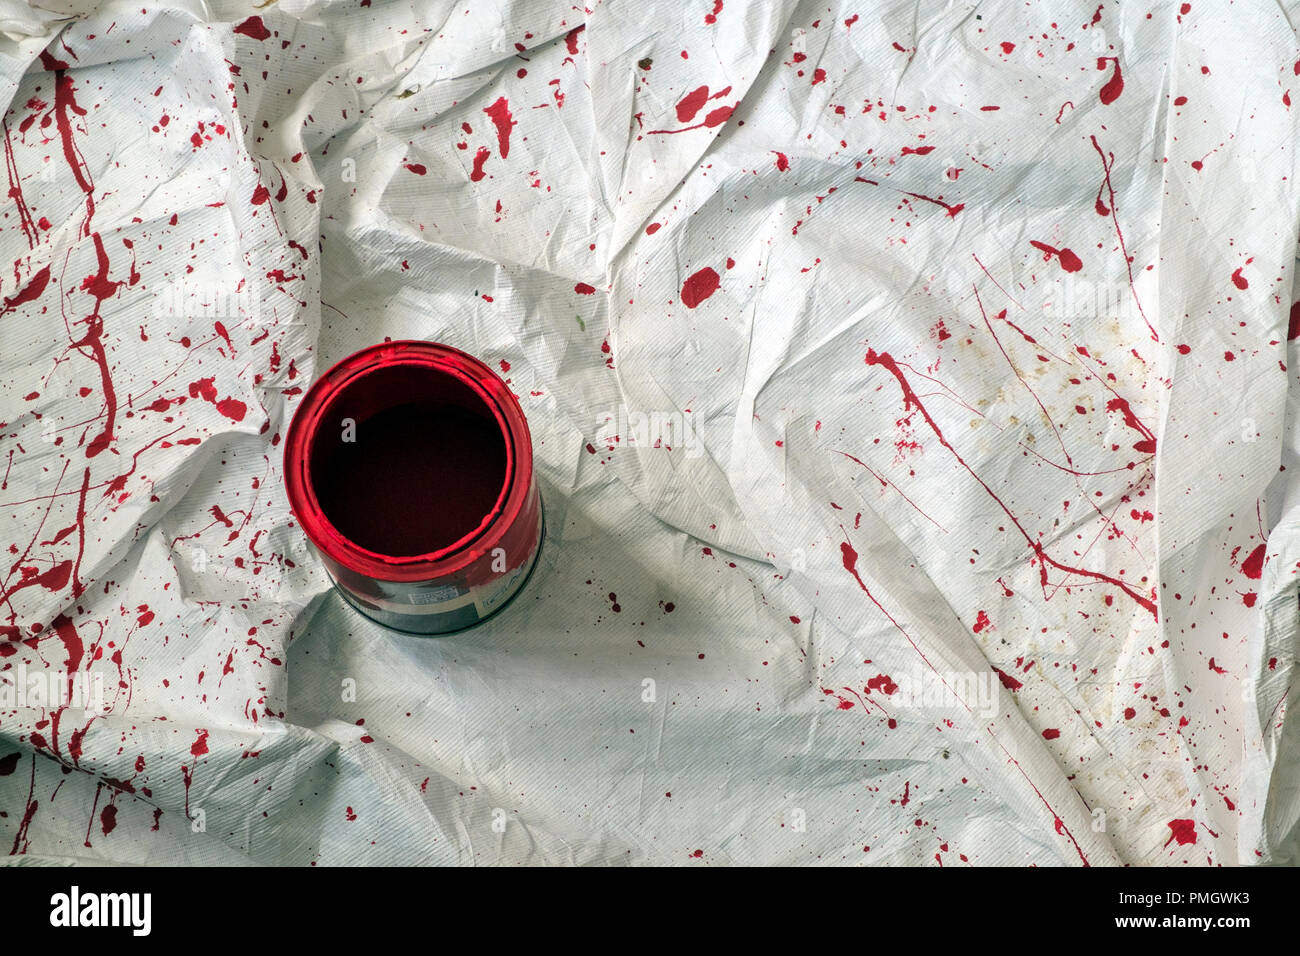 Un equipo de decoradores antipolvo con salpican de vibrante pintura roja alrededor de una lata de pintura abierta. Foto de stock